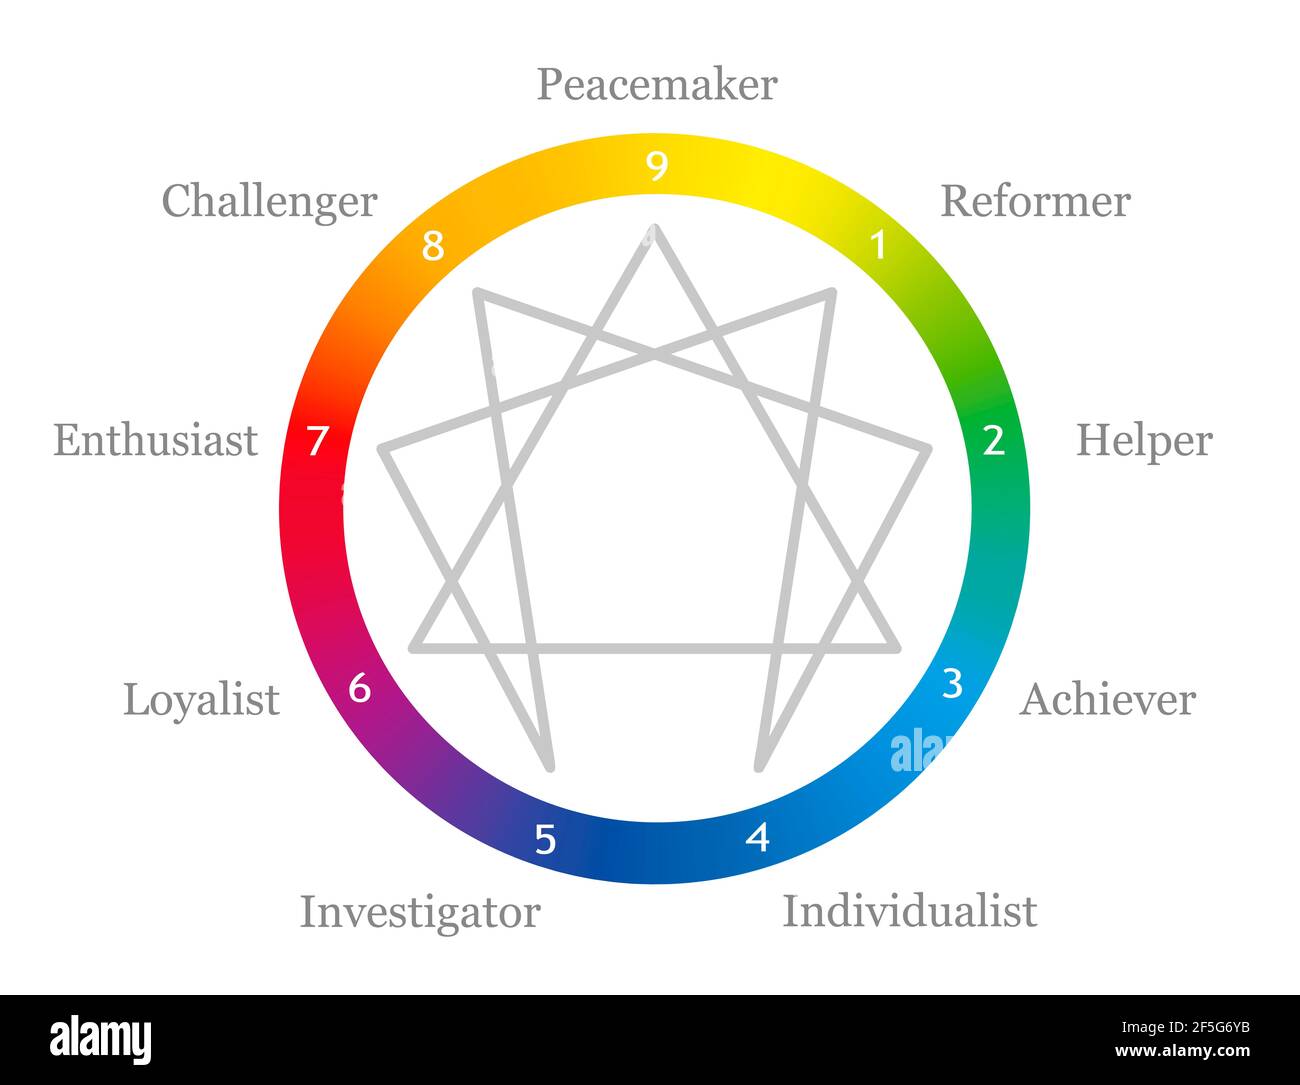 Logo enneatypes colorato, simbolo enneagramma di colore arcobaleno con numeri da uno a nove per i diversi tipi di personalità. Gradiente arcobaleno. Foto Stock